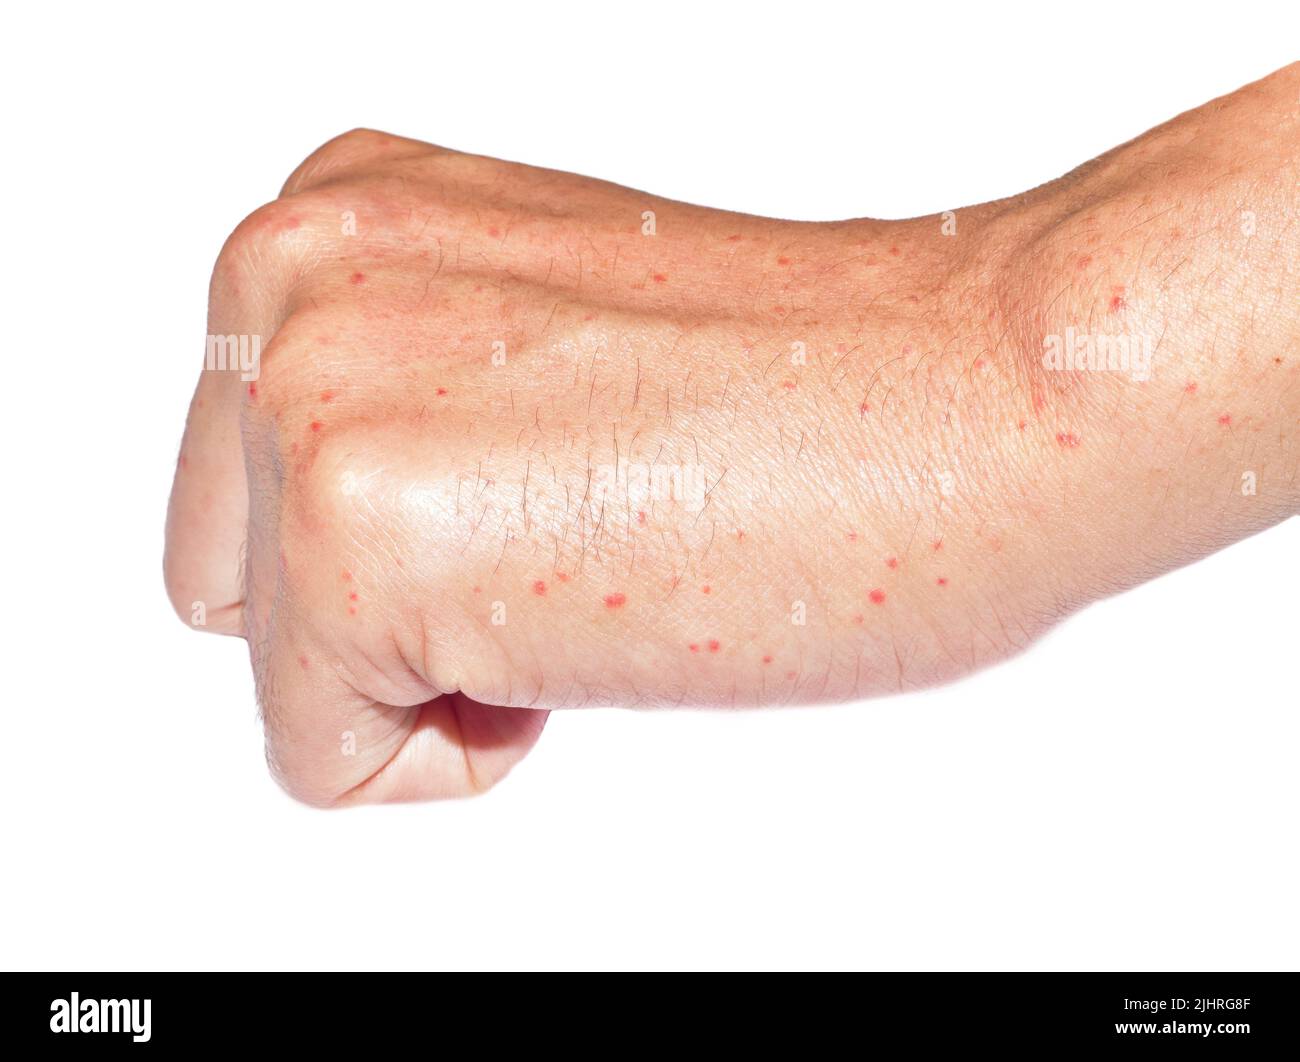 Mehrere juckende Moskitos oder Insektenbiss-Keuchen; rote Flecken auf der Hand des südostasiatischen, chinesischen erwachsenen jungen Mannes. Isoliert auf weißem Hintergrund. Stockfoto